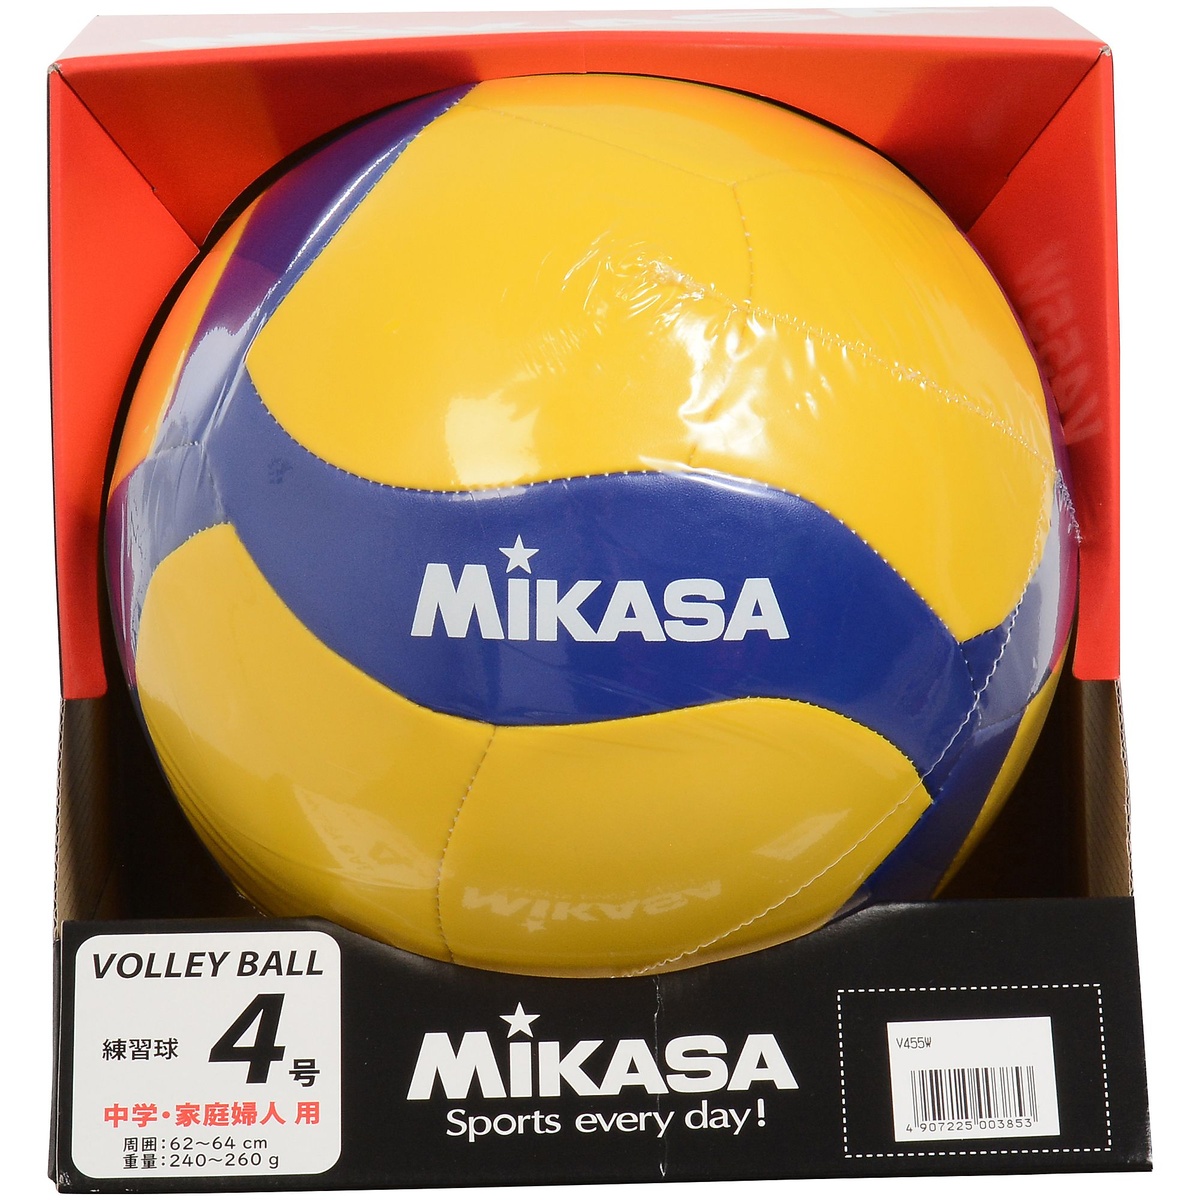 楽天市場 Mikasa ミカサ バレー4号 レクリエーション 縫い 黄 青 バレーボール 4号ボール 4 V455w スポーツオーソリティ 楽天市場店